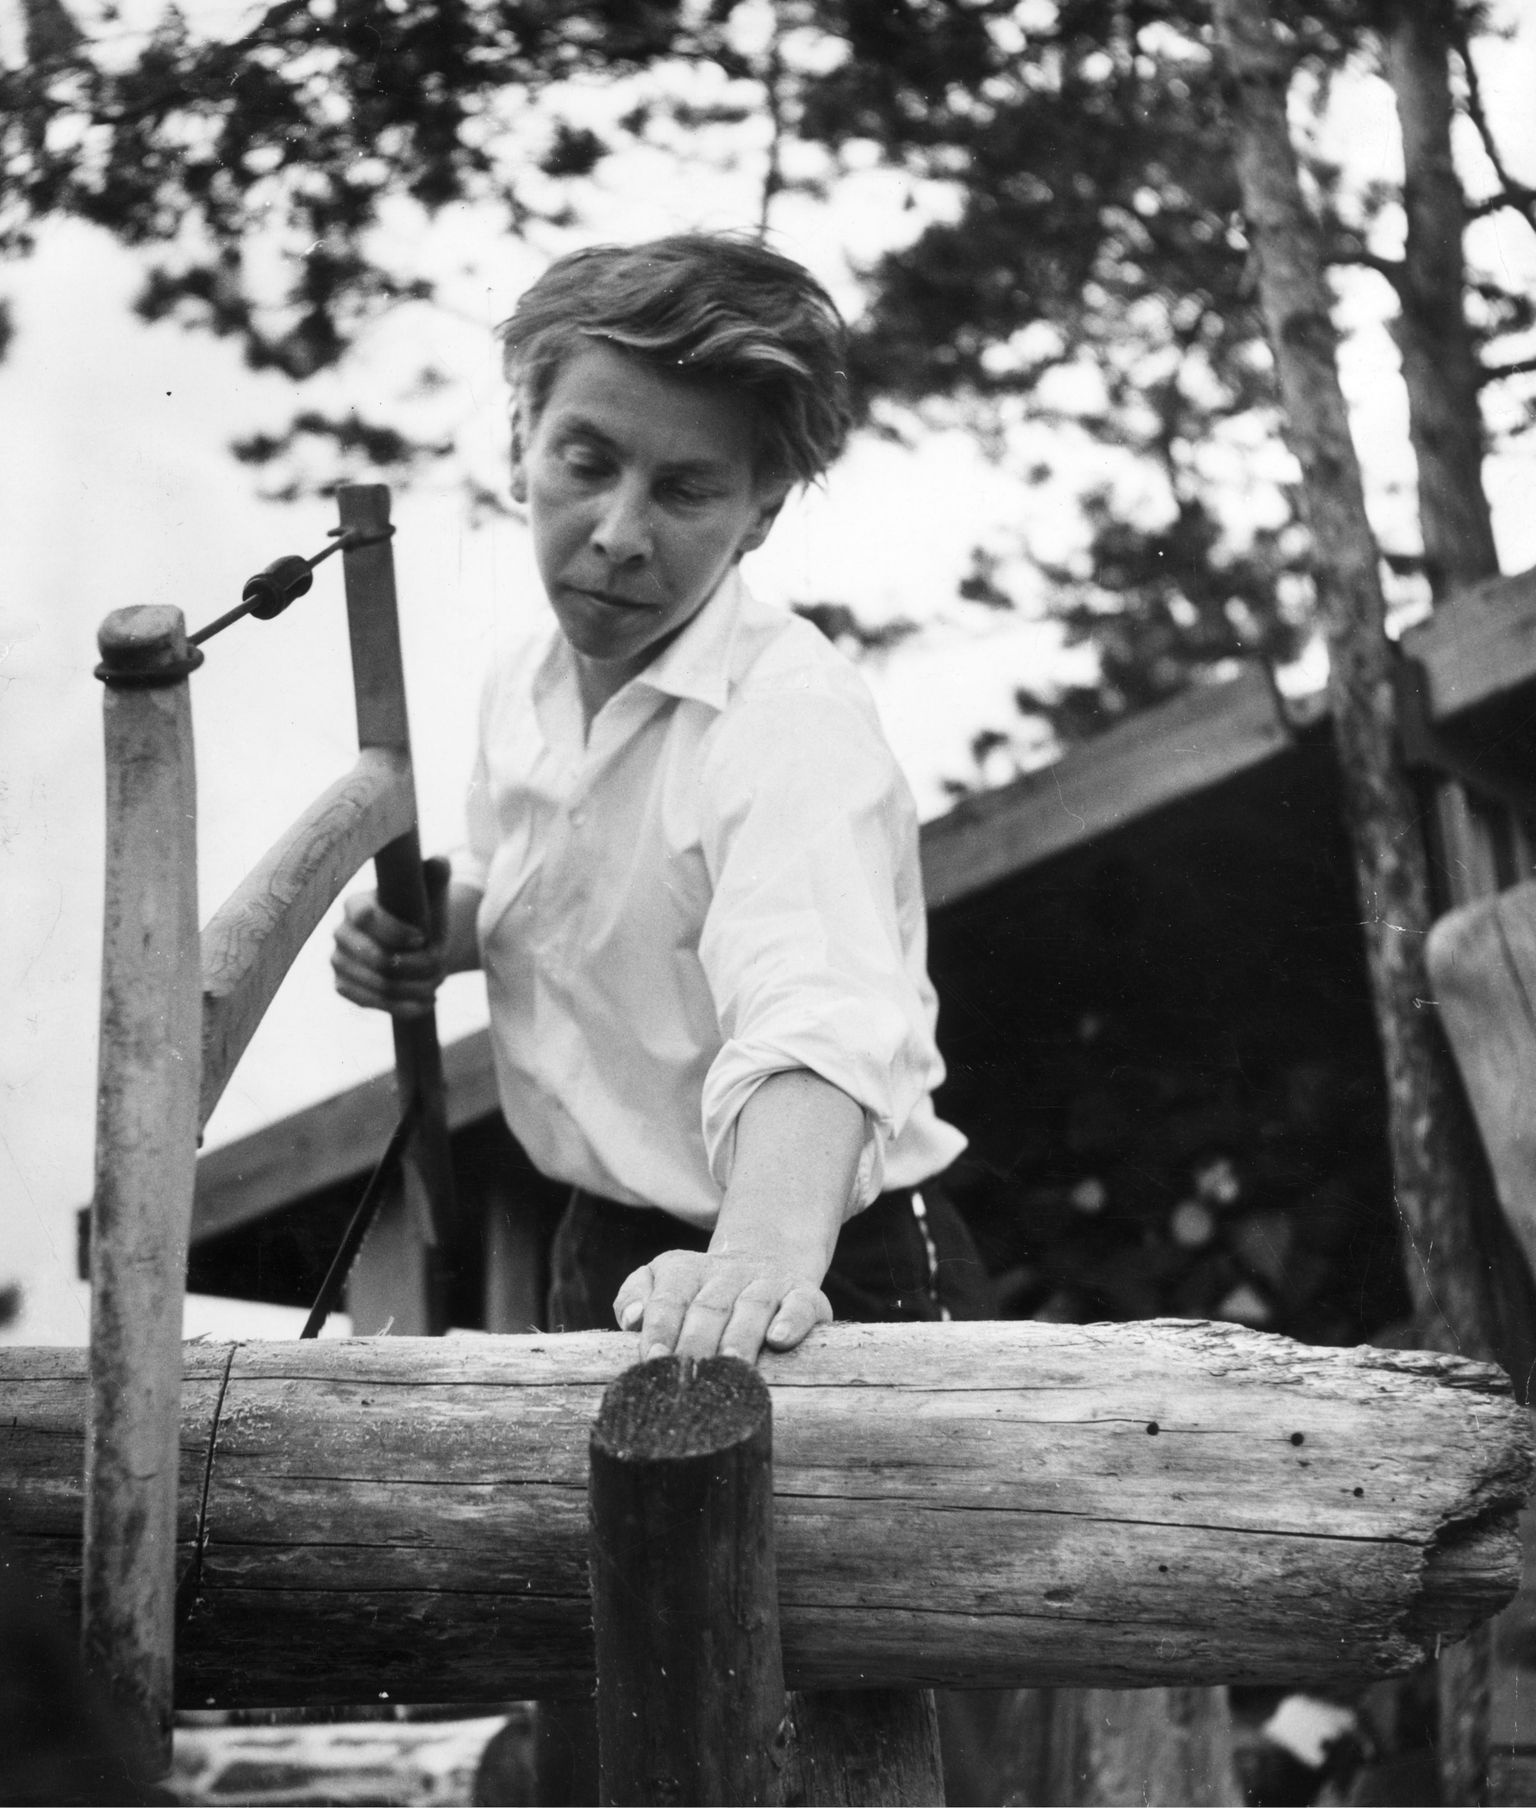 Soome kirjanik ja illustraator Tove Jansson (9. august 1914 – 27. juuni 2001).